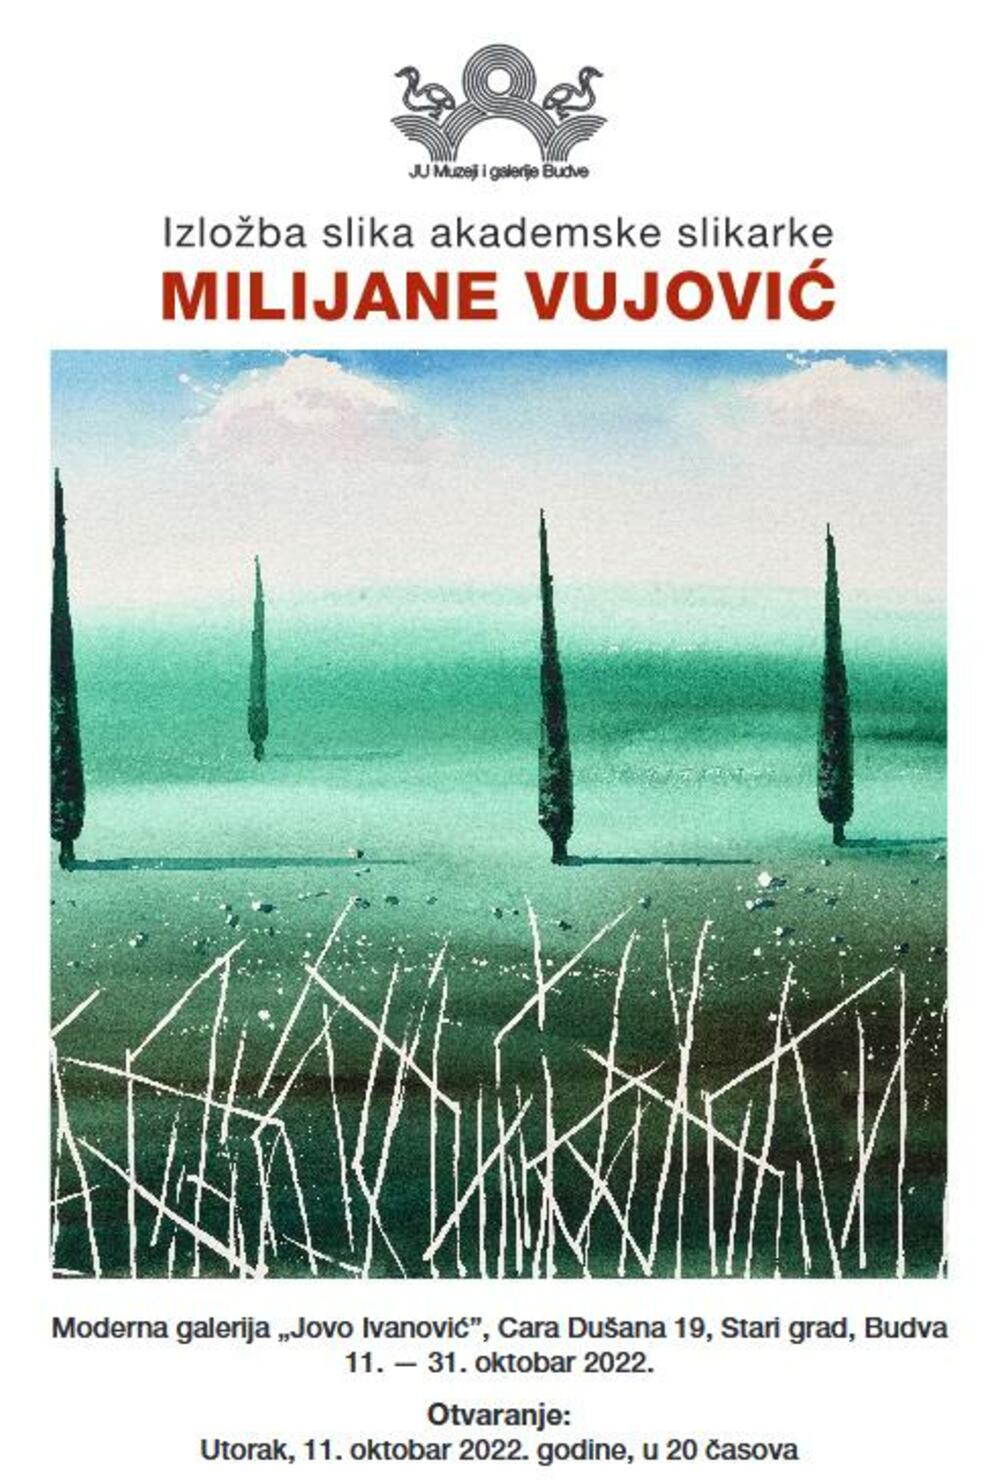 Milijana Vujović